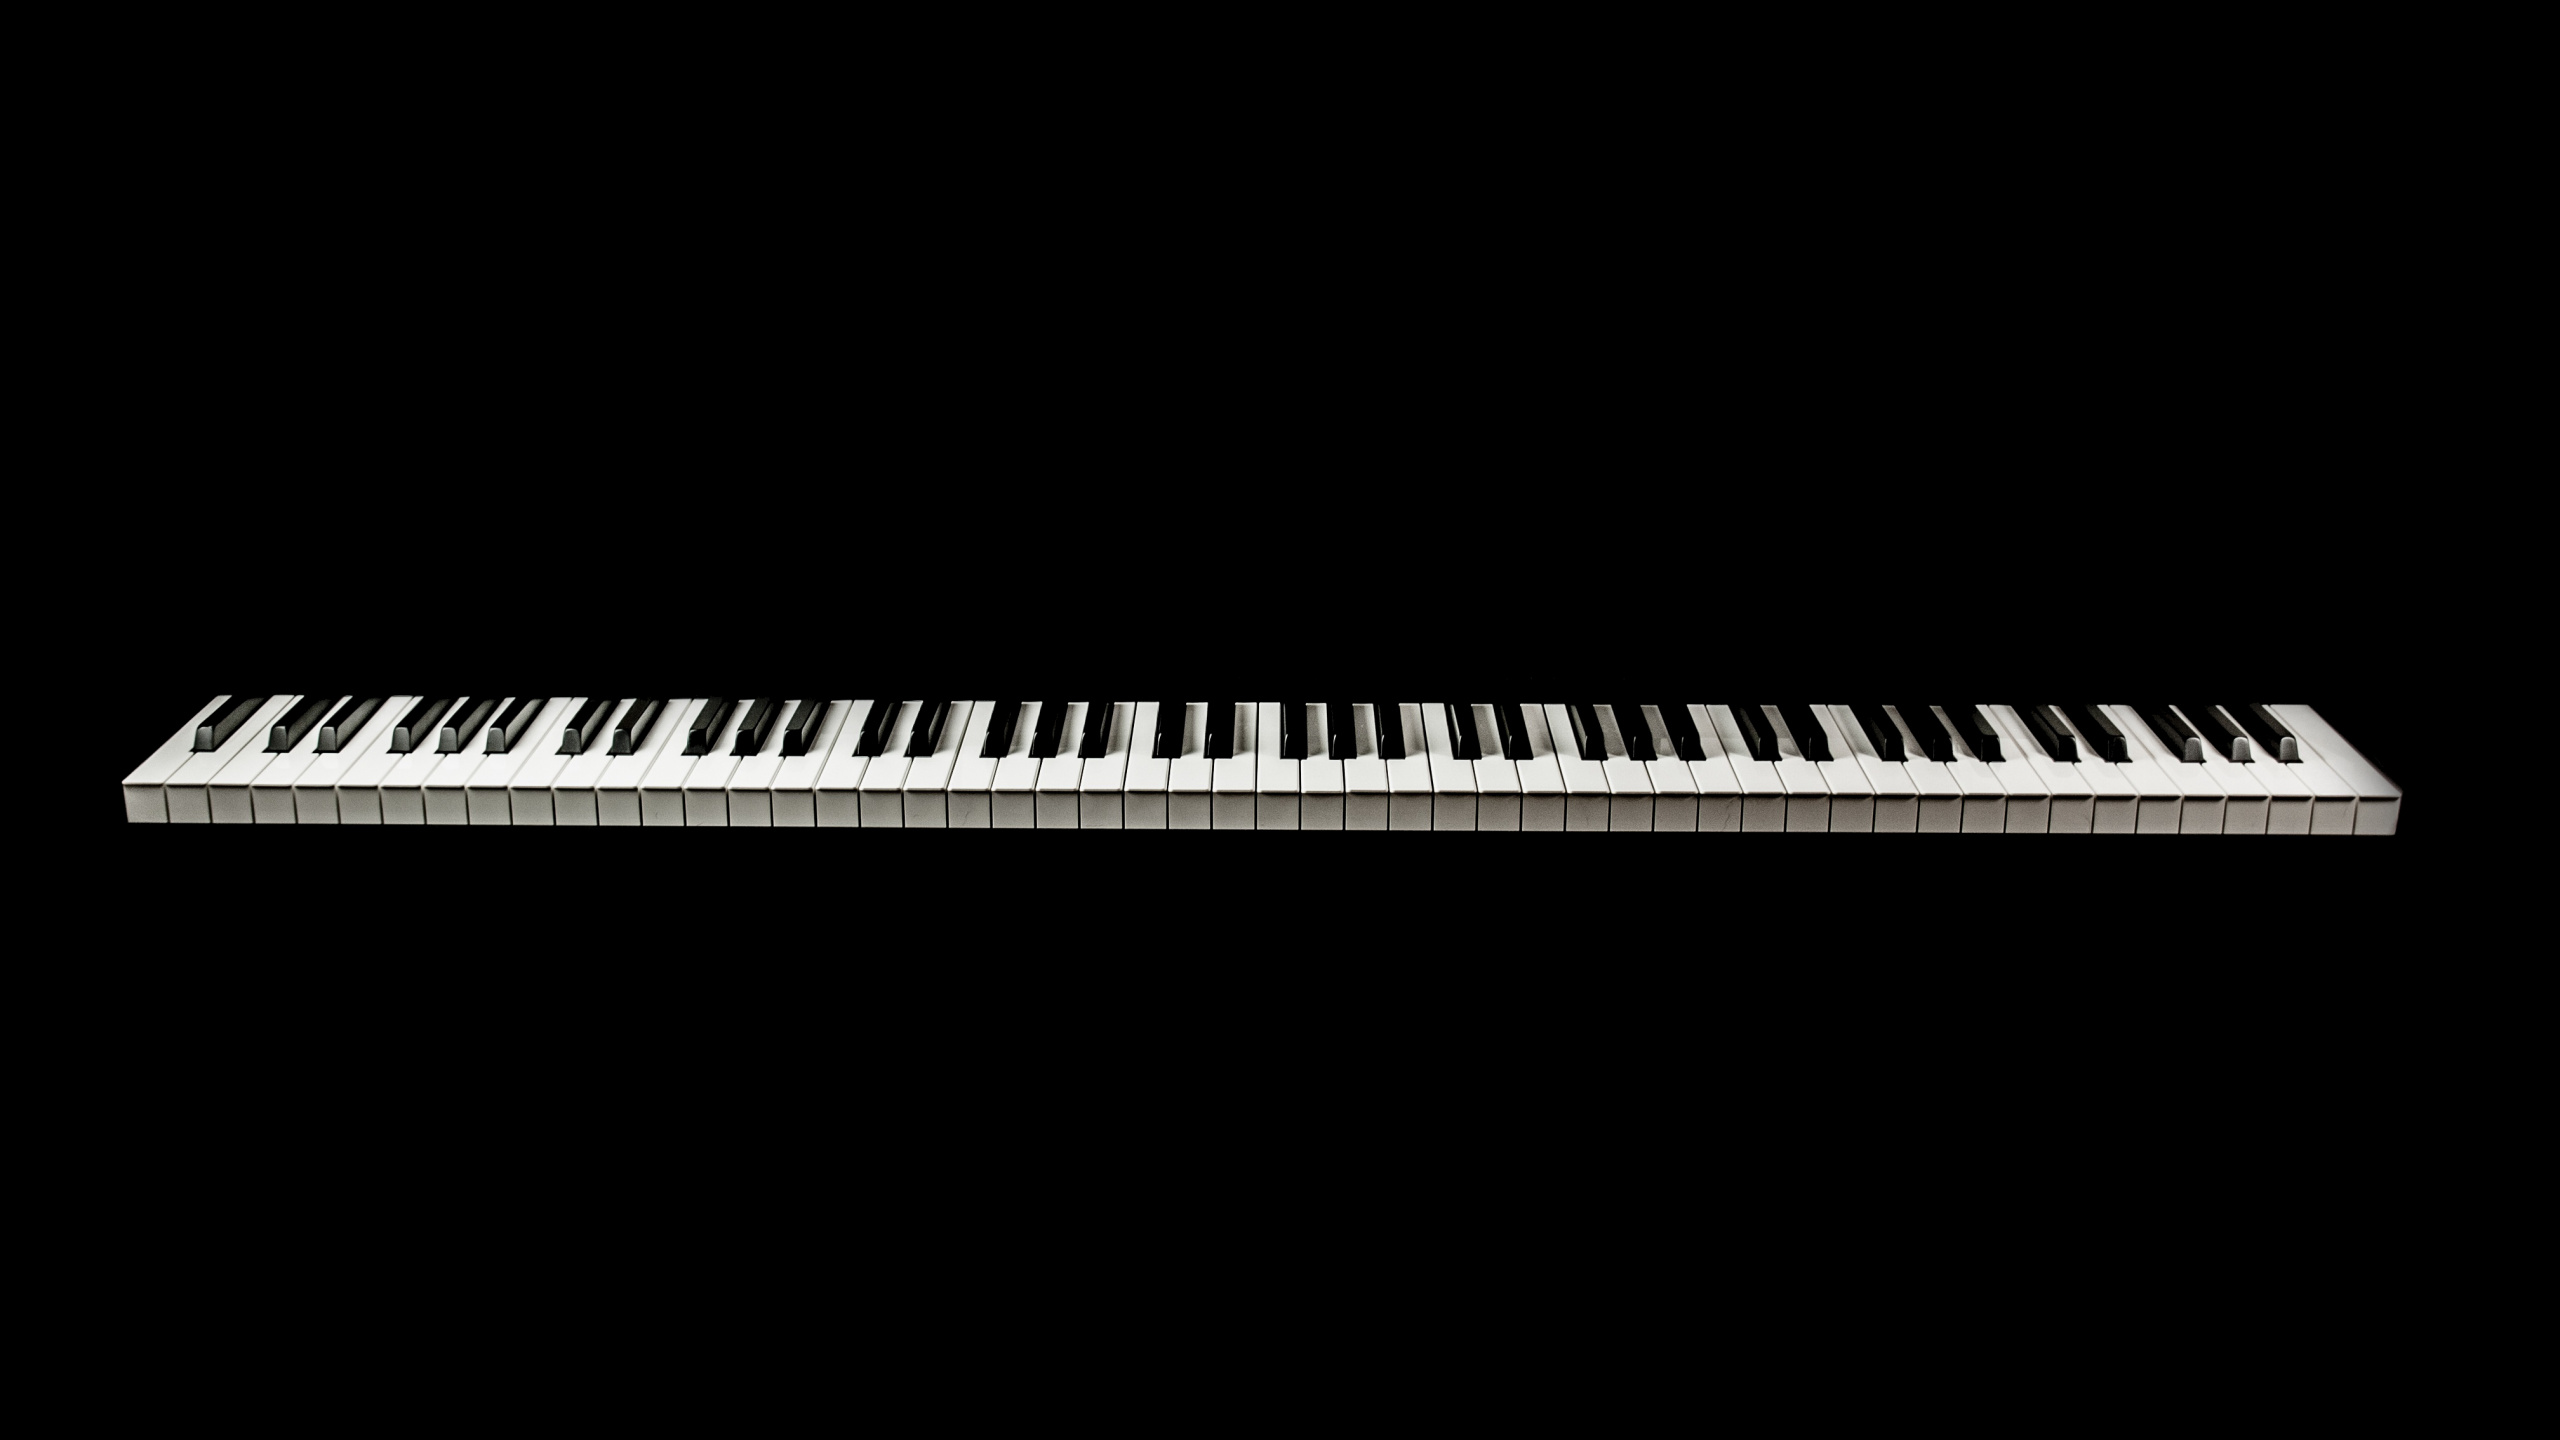 音乐键盘, 数字钢琴, 电子琴, 钢琴, 键盘 壁纸 2560x1440 允许